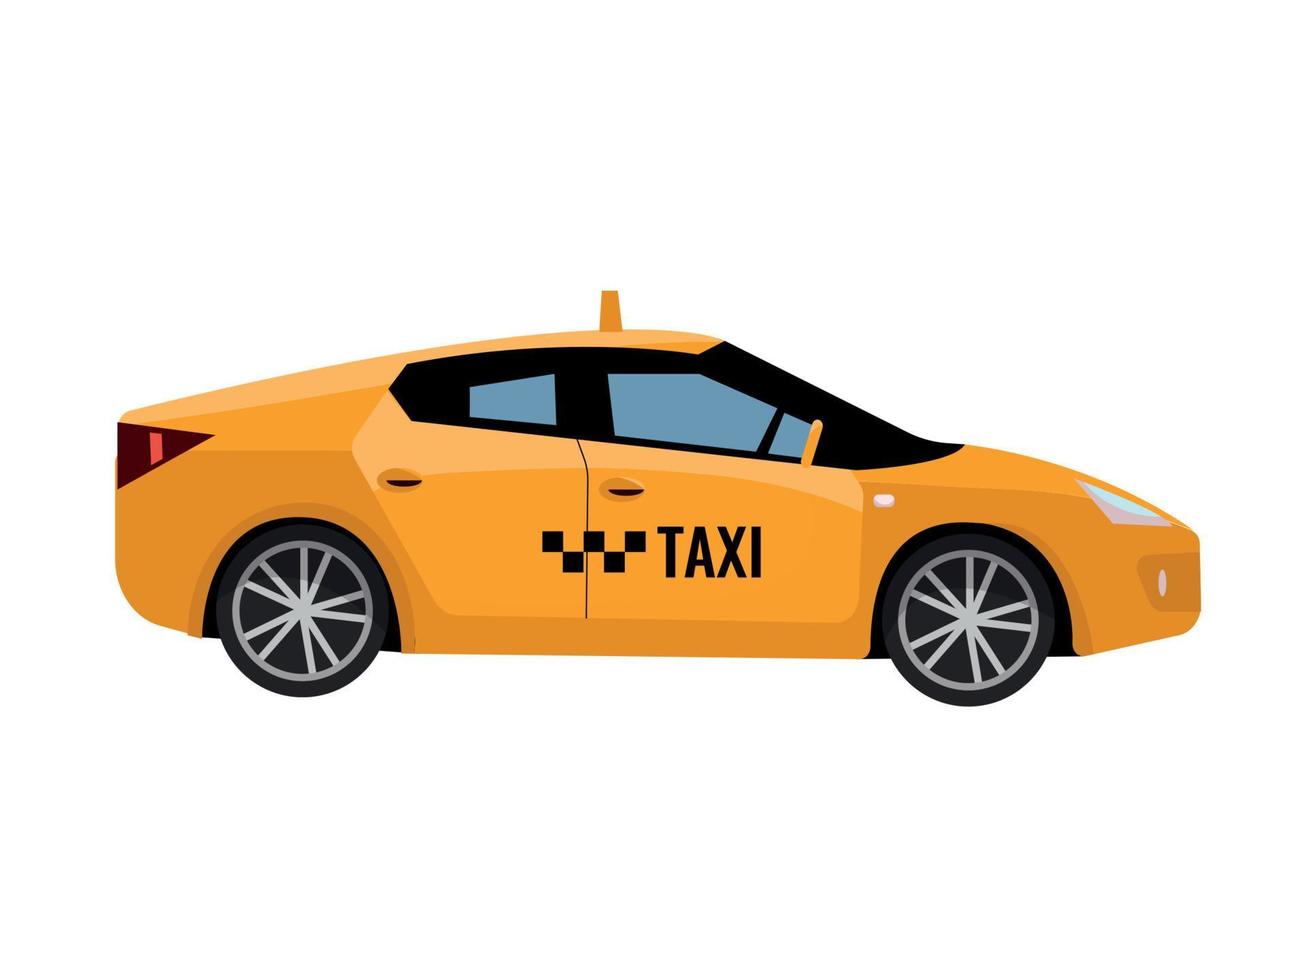 taxi taxi voiture jaune isolé sur fond blanc. véhicule moderne contemporain. vue latérale de la voiture jaune avec personne à l'intérieur. illustration de dessin animé plat de vecteur sur fond blanc